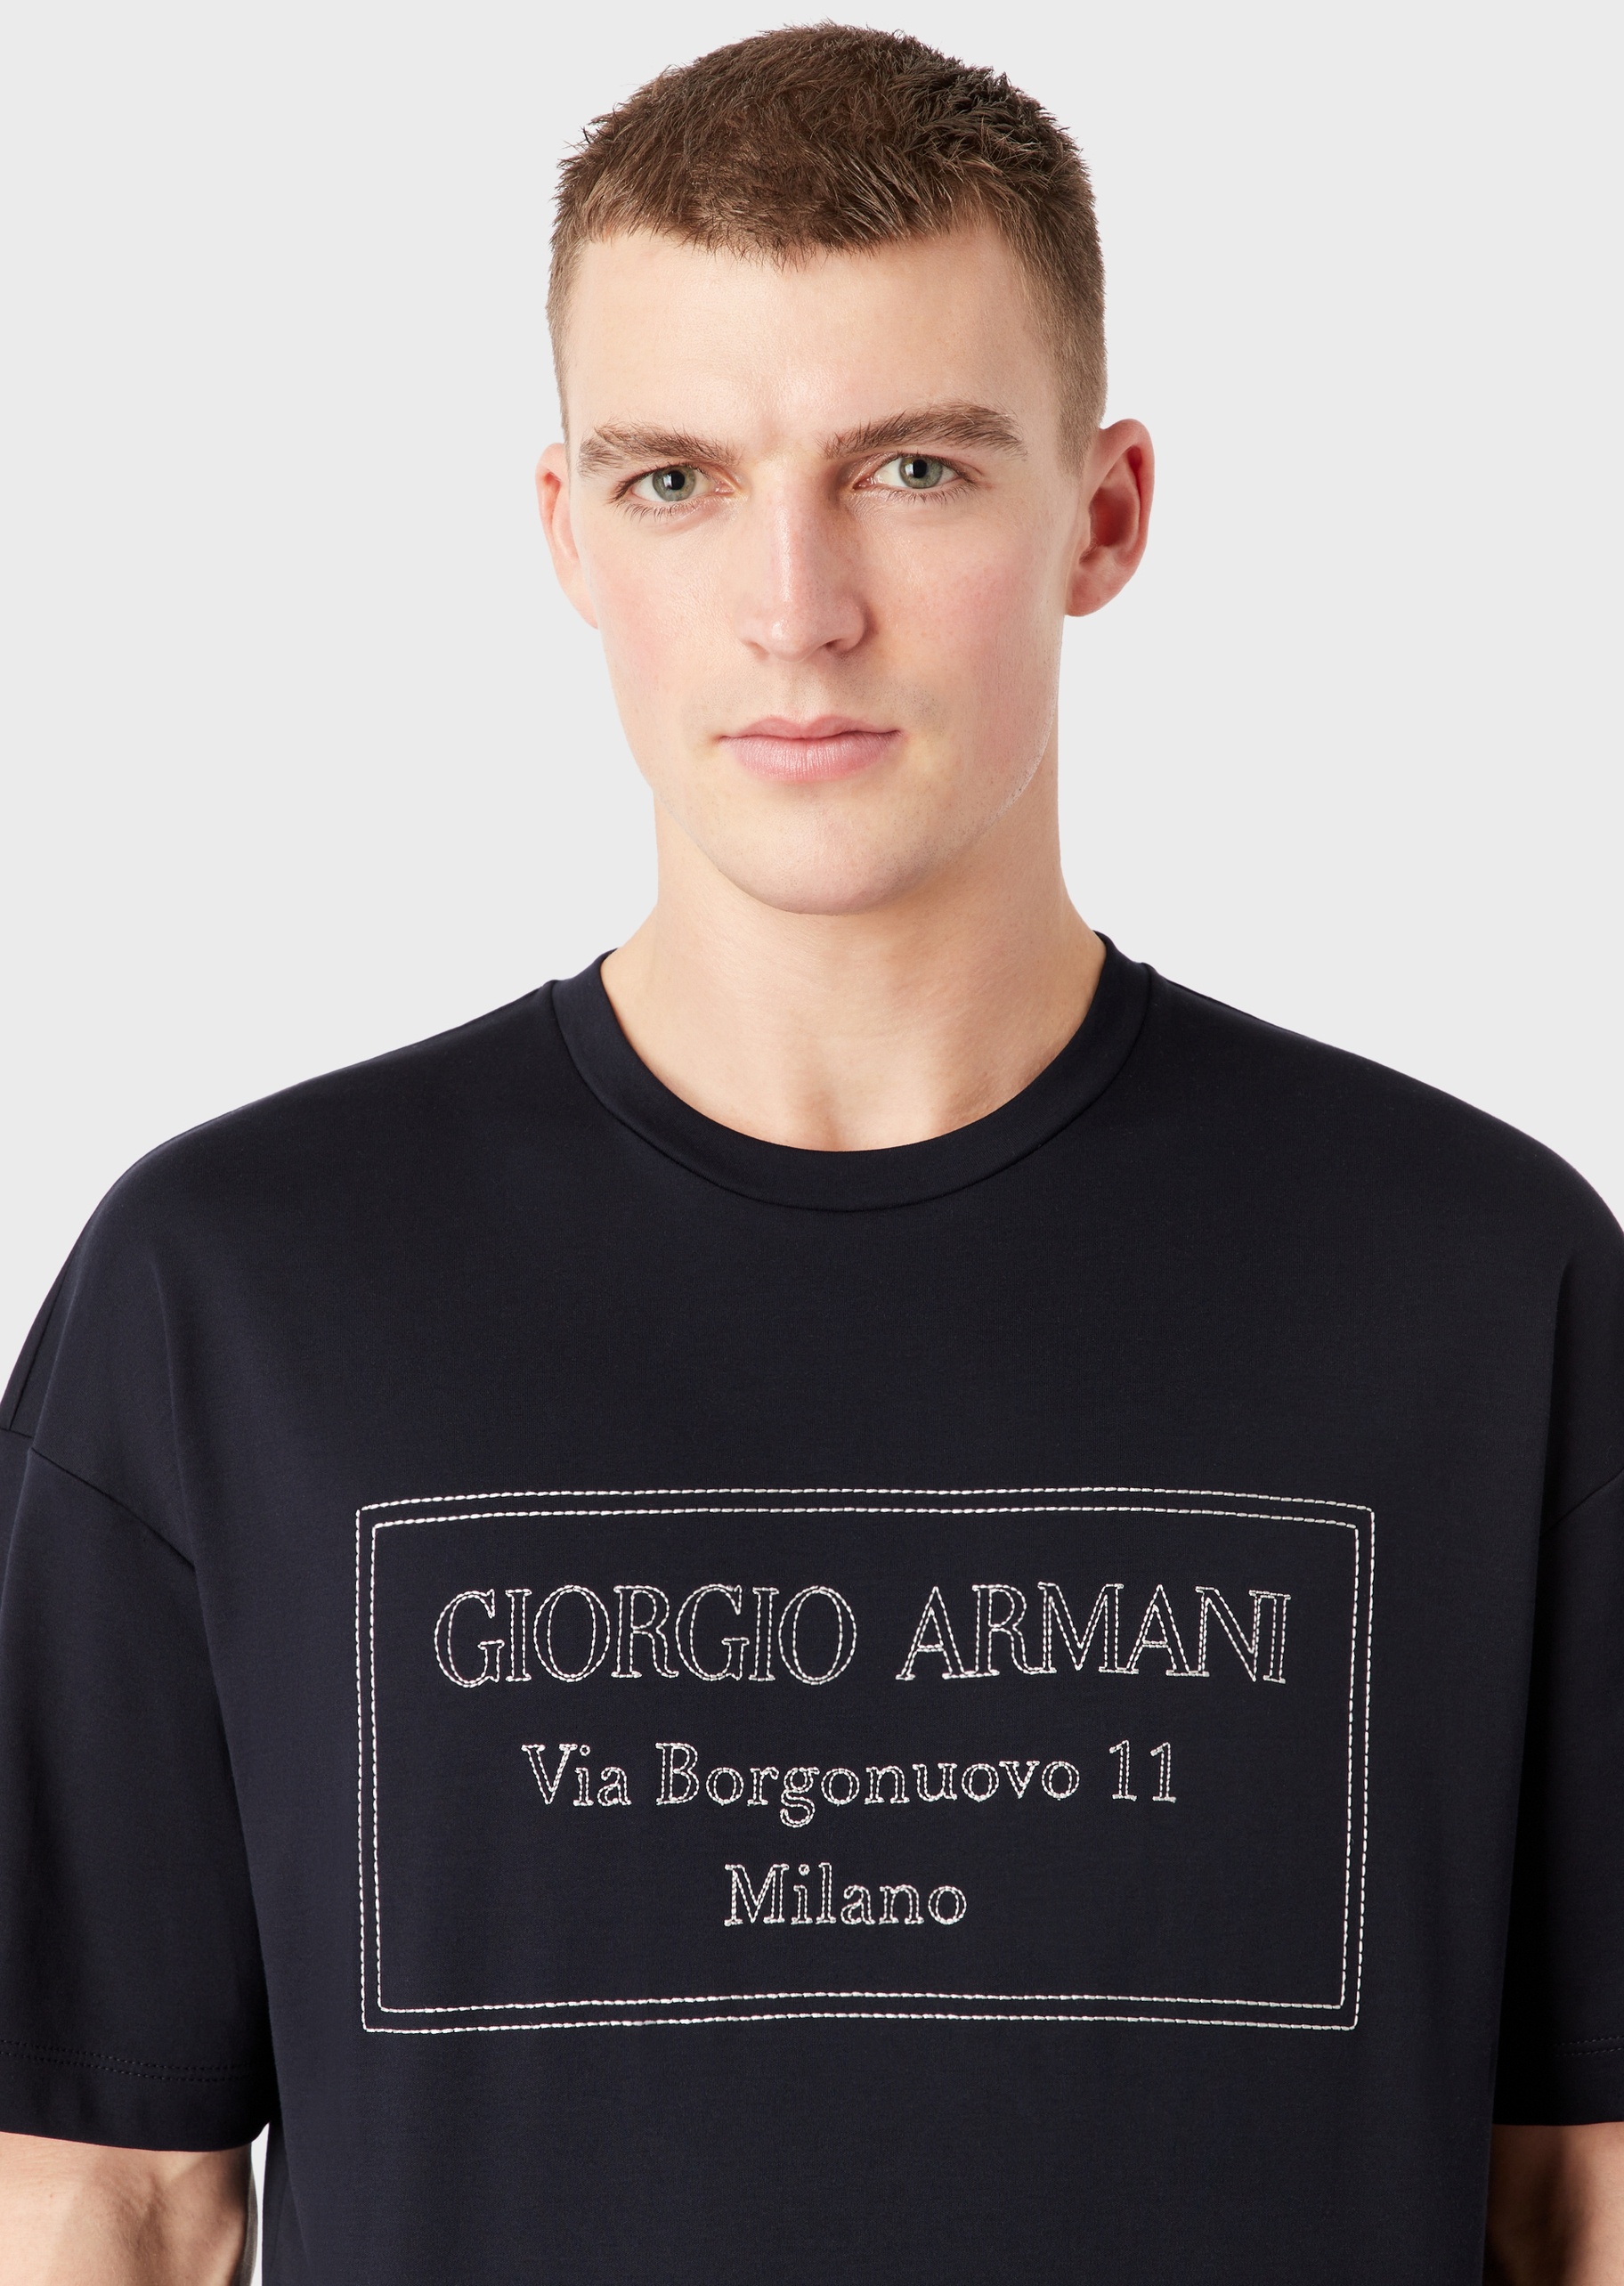 Giorgio Armani 男士全棉宽松短袖圆领落肩都市休闲T恤